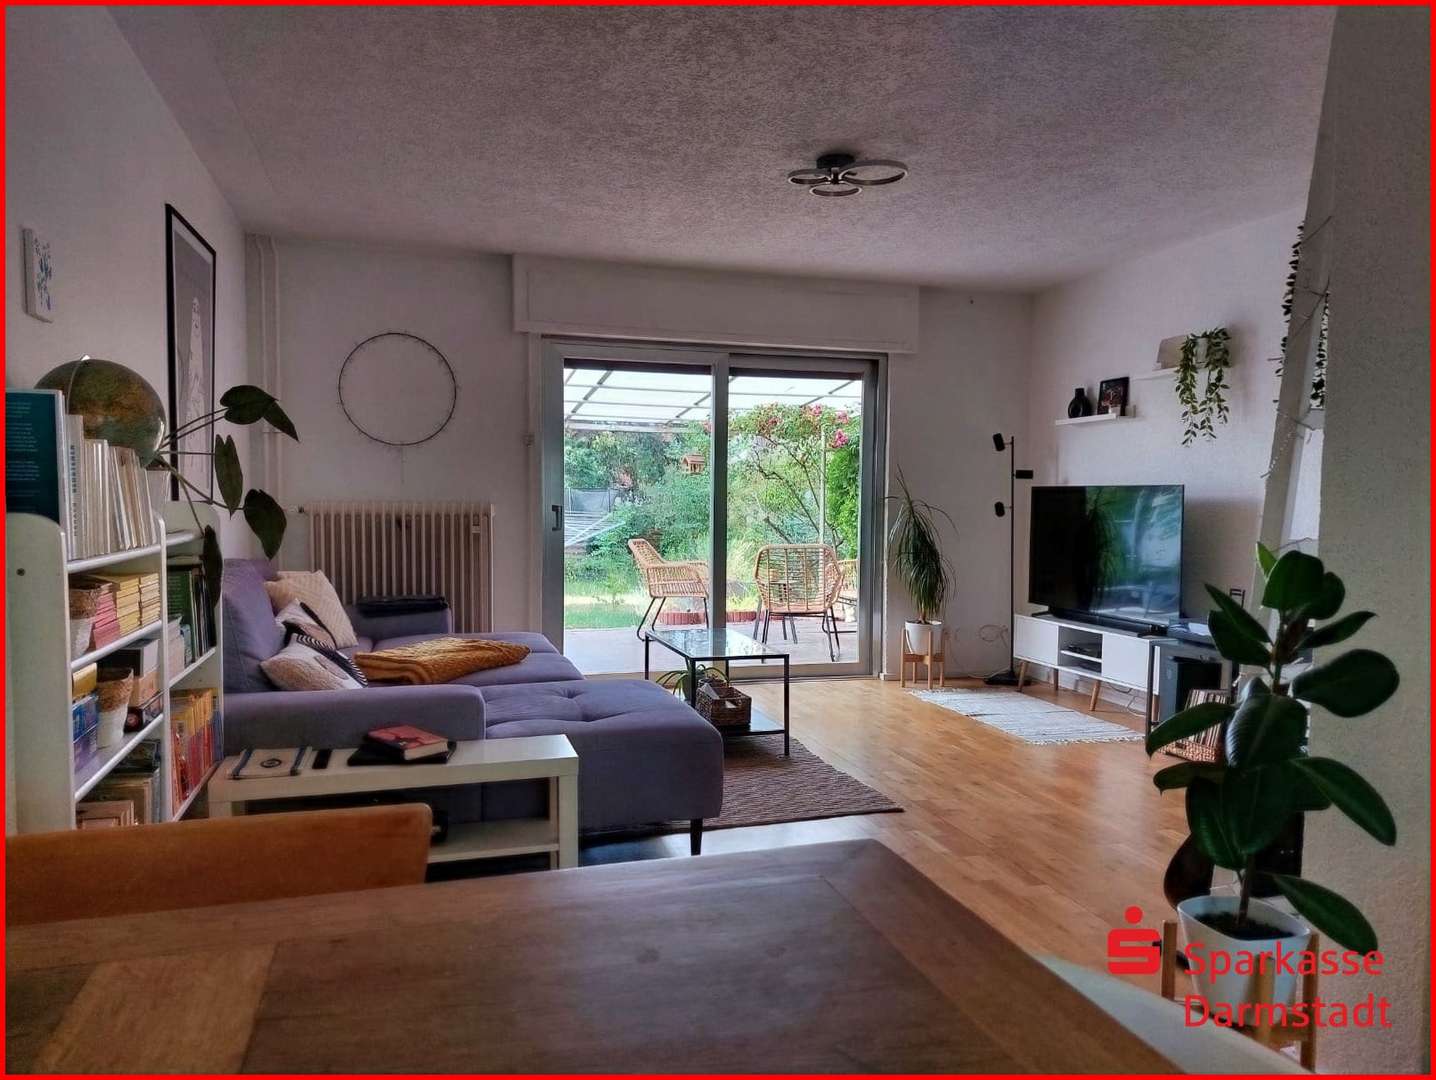 null - Zweifamilienhaus in 64297 Darmstadt mit 160m² kaufen